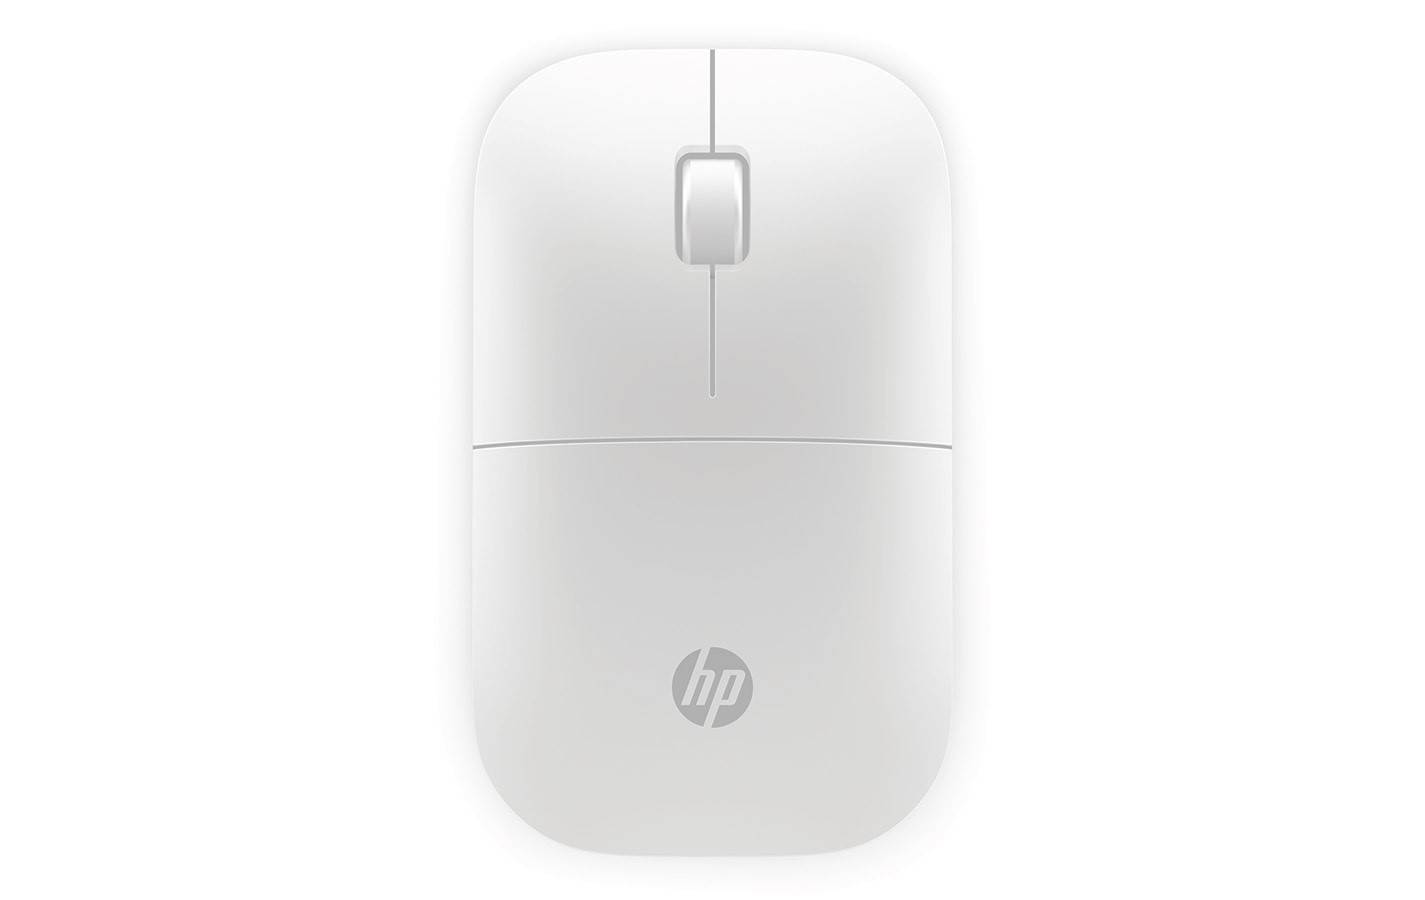 Bezdrôtová myš HP Z3700 Wireless Mouse, biela V0L80AA#ABB